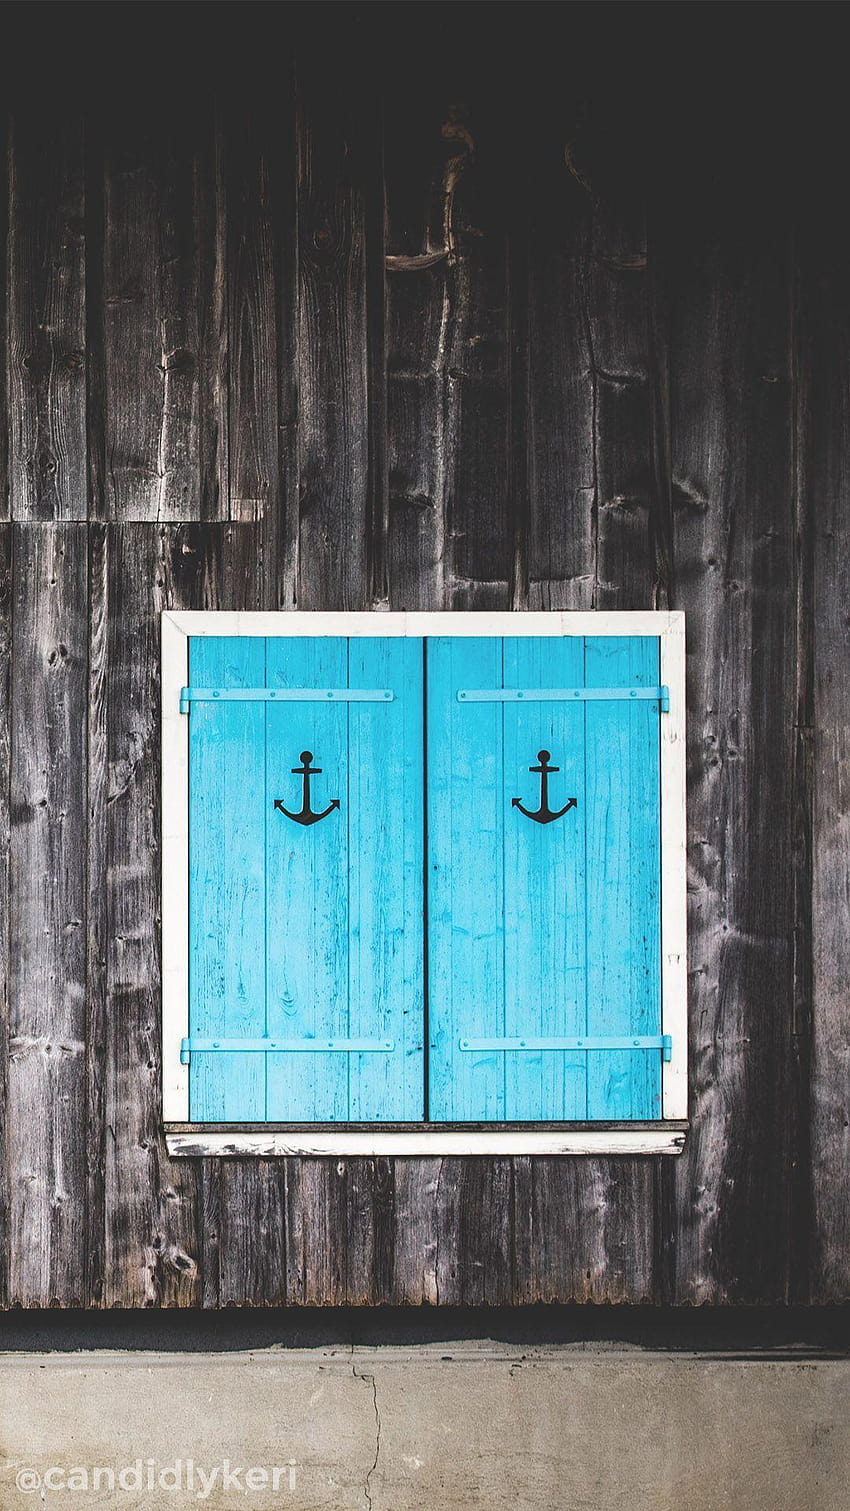 Anker blaue Tür Seeschuppen Scheune 2017 kannst du HD-Handy-Hintergrundbild